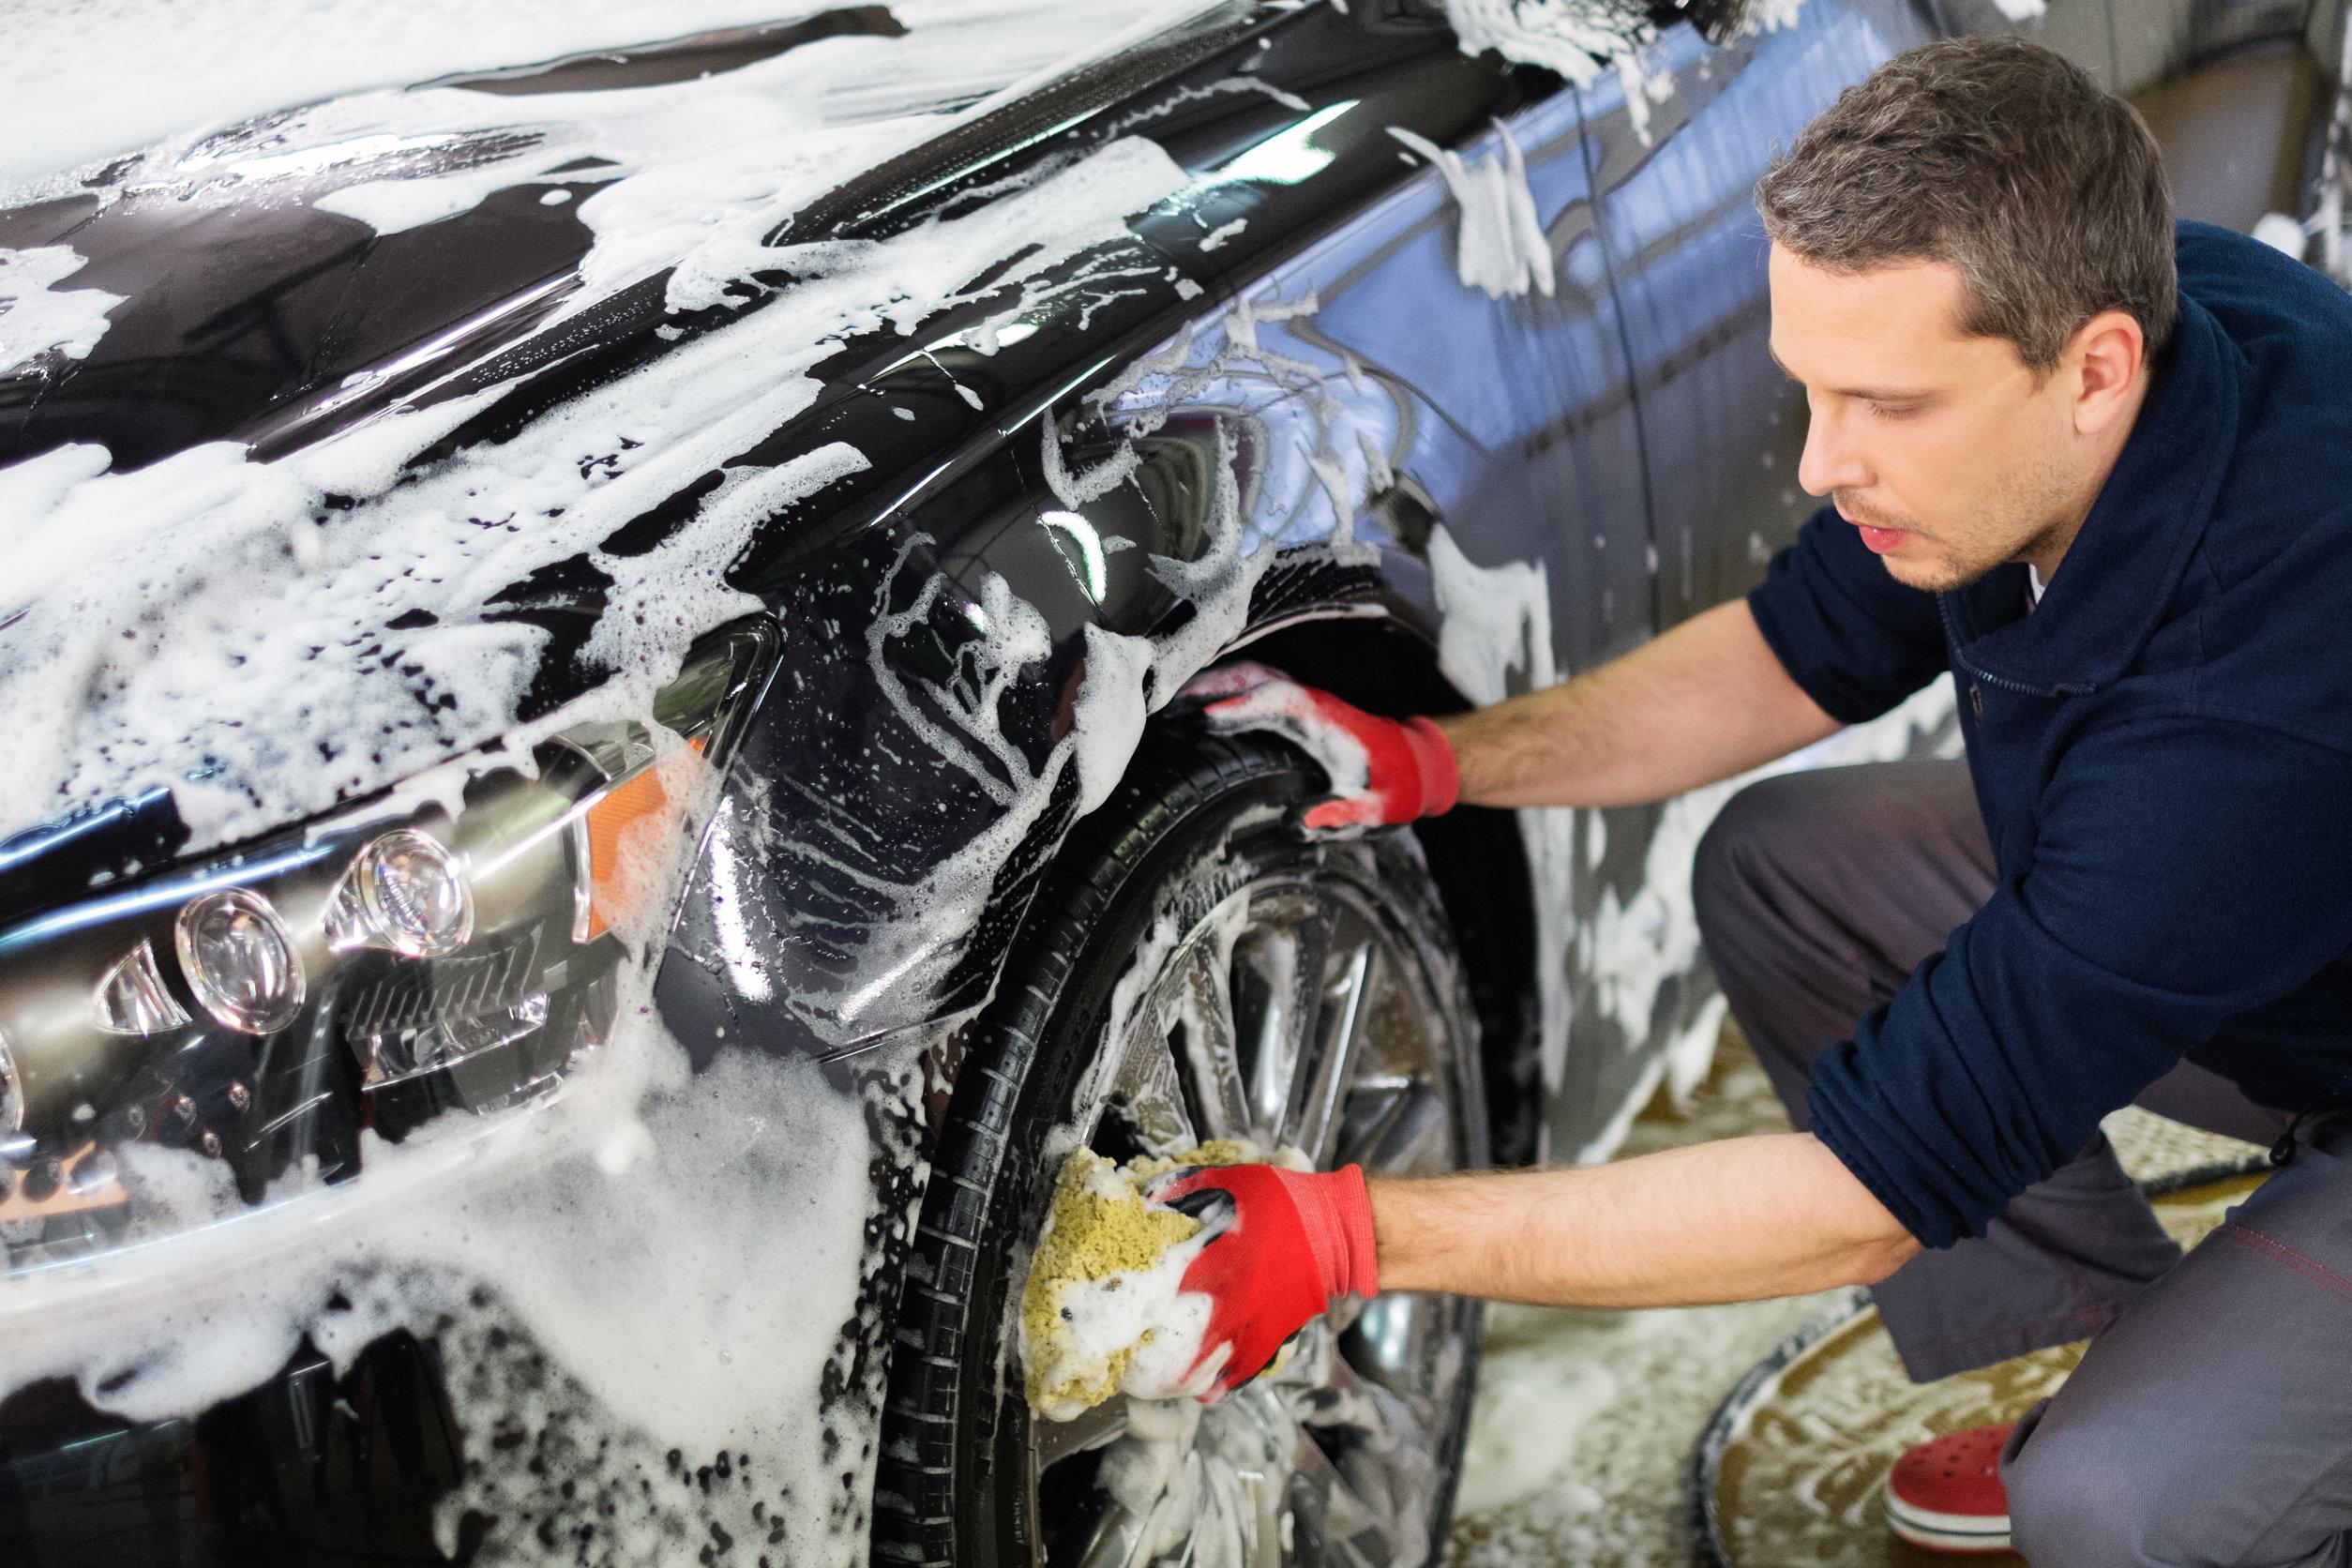 Lavare l'auto da soli: i consigli pratici per fare un buon lavoro